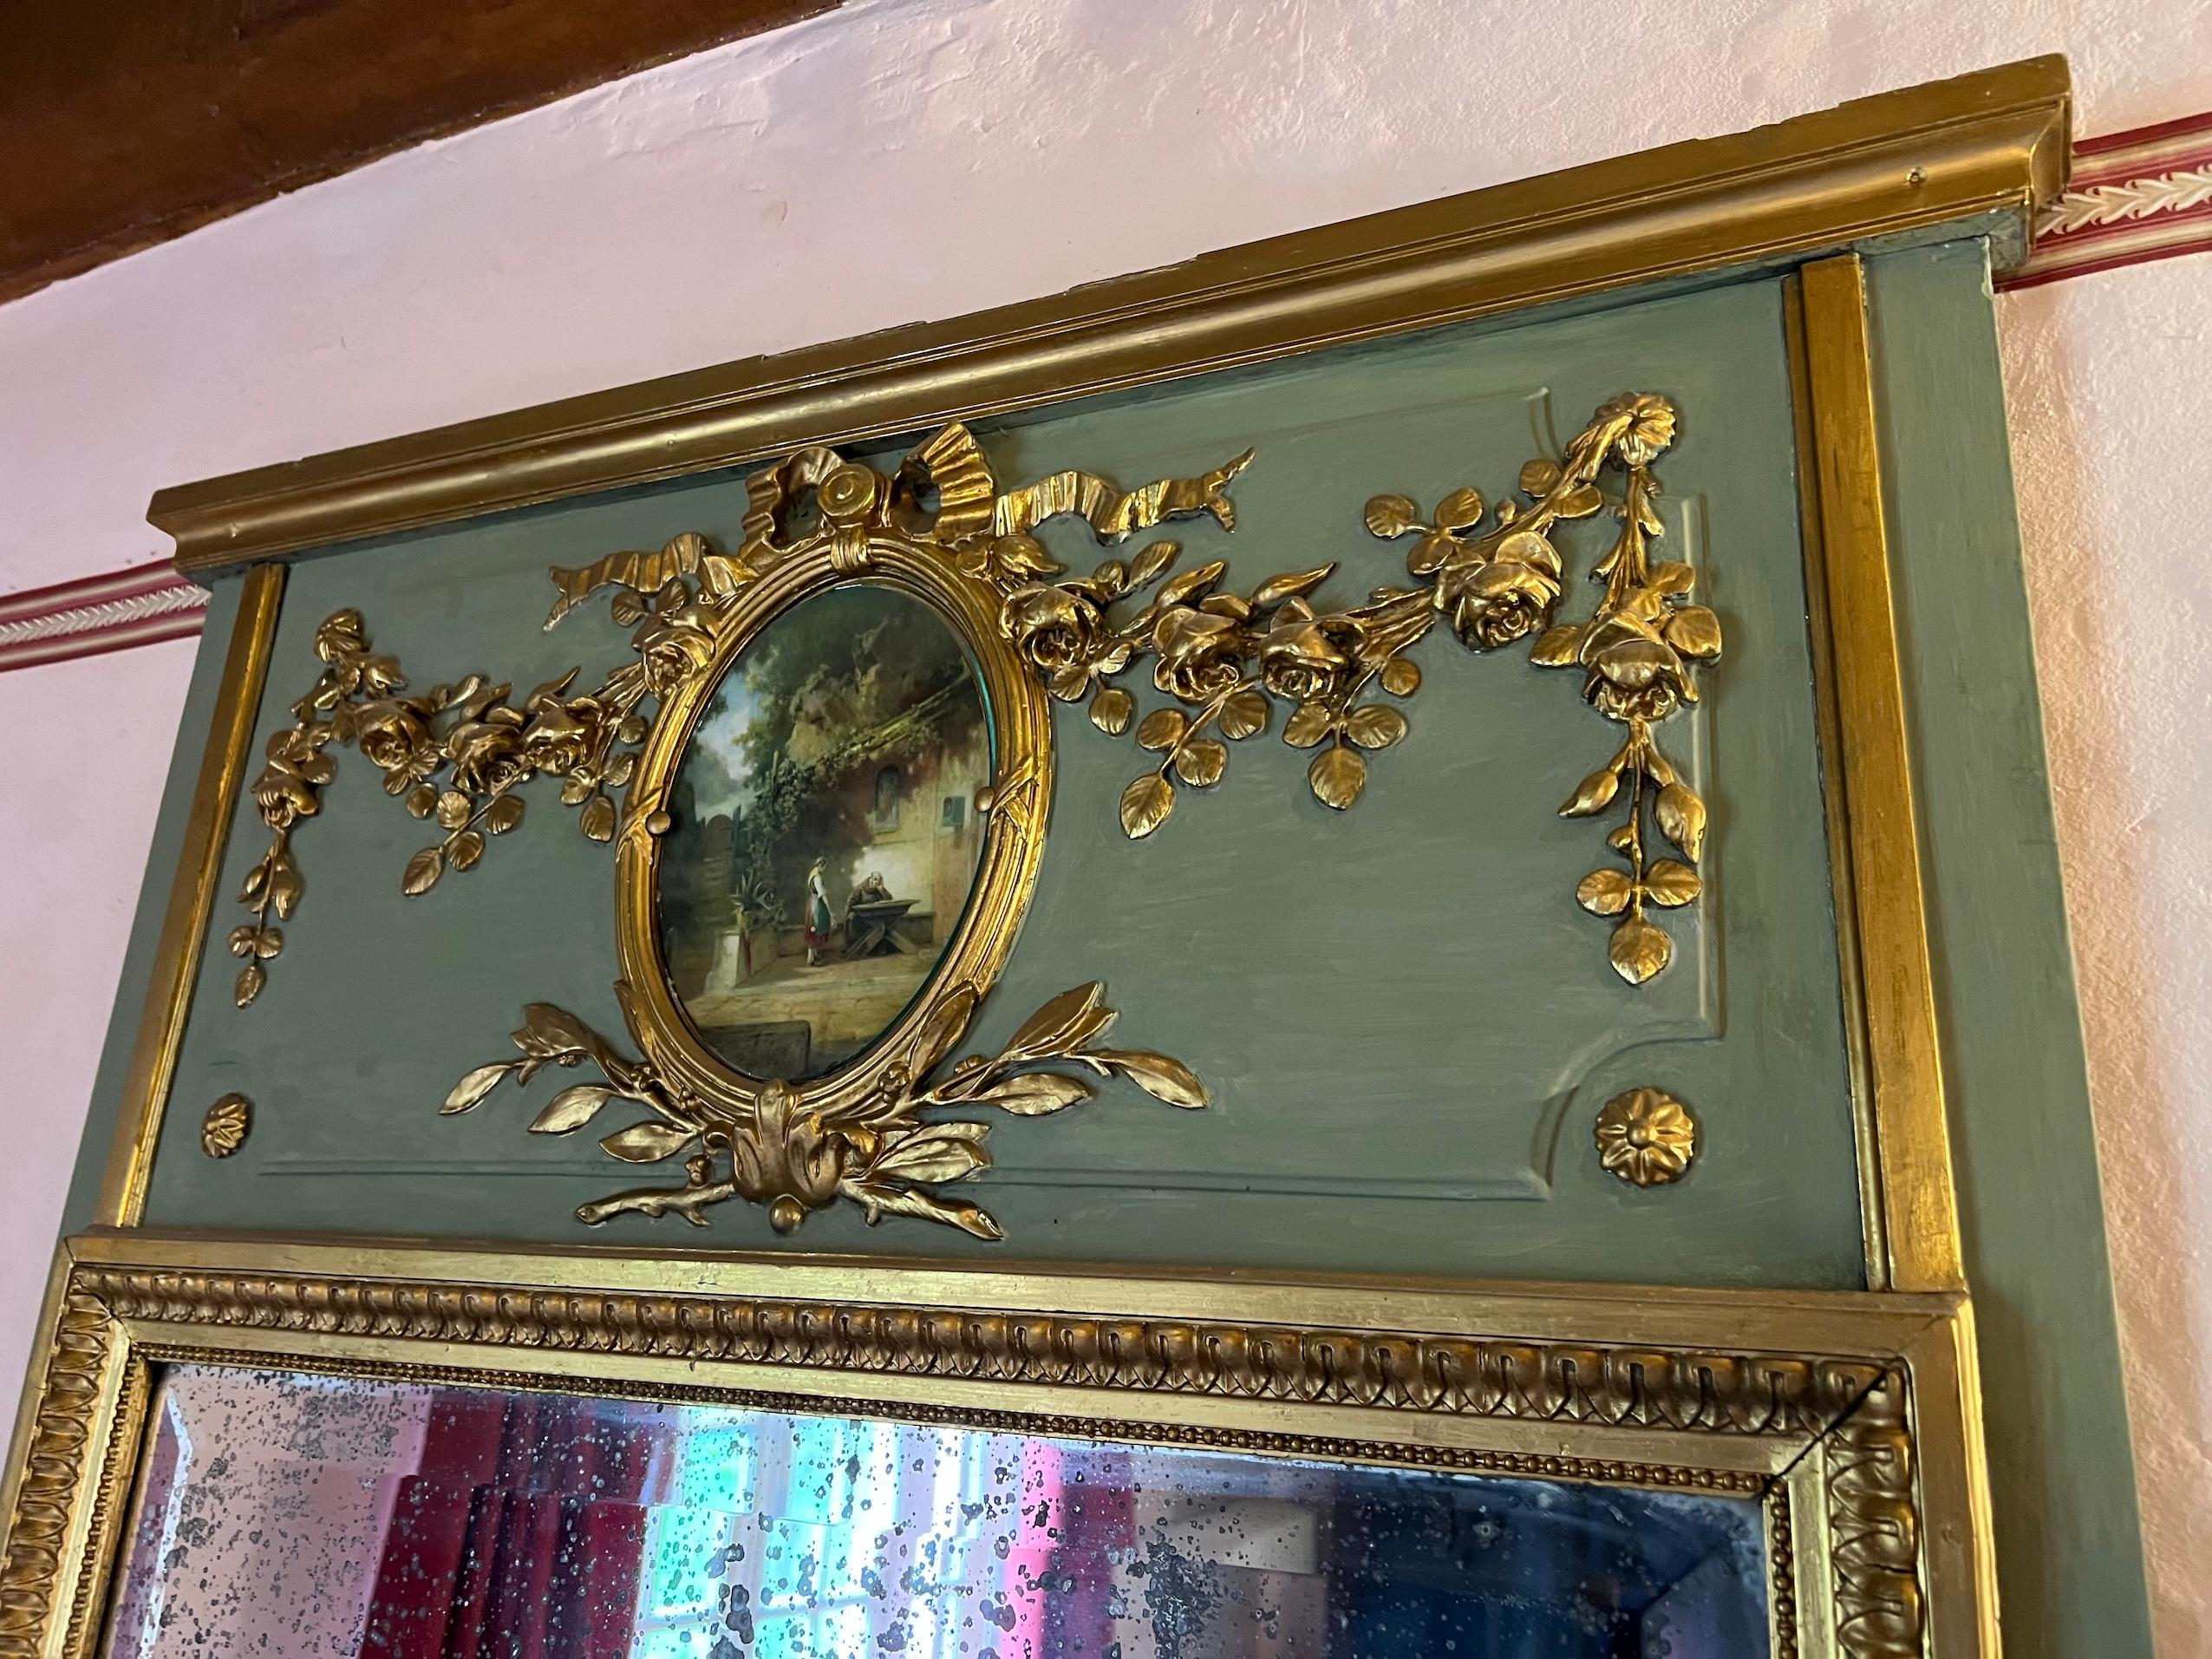 Miroir Trumeau français du 19ème siècle de style Louis XVI
Miroir trumeau de style Louis XVI. La peinture représente une scène de campagne, enfermée dans un médaillon couronné d'un arc en stuc au sommet. Les côtés sont ornés de délicates guirlandes